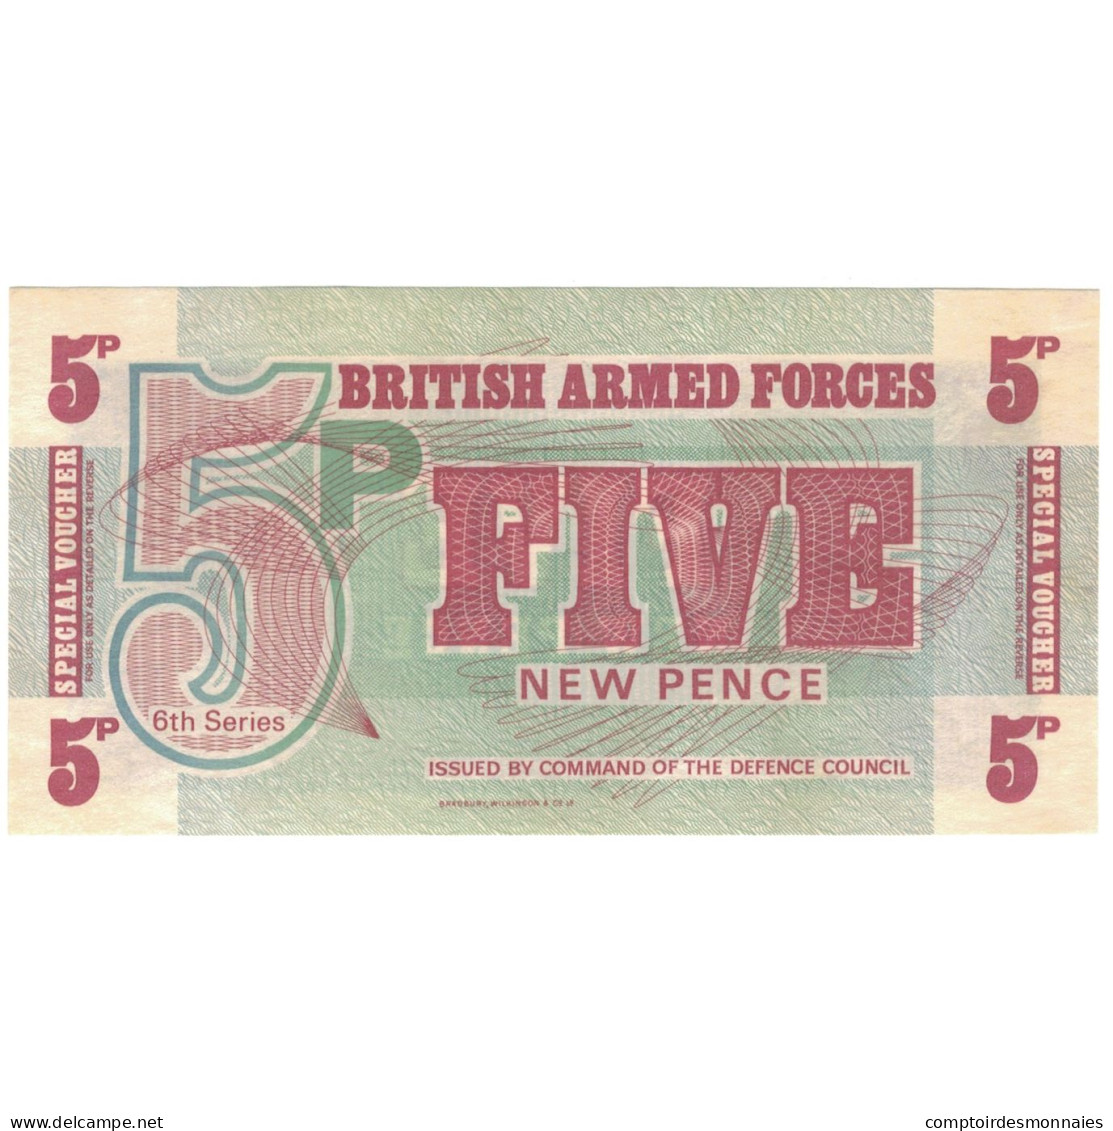 Billet, Grande-Bretagne, 5 New Pence, Undated (1972), KM:M47, SUP - Fuerzas Armadas Británicas & Recibos Especiales